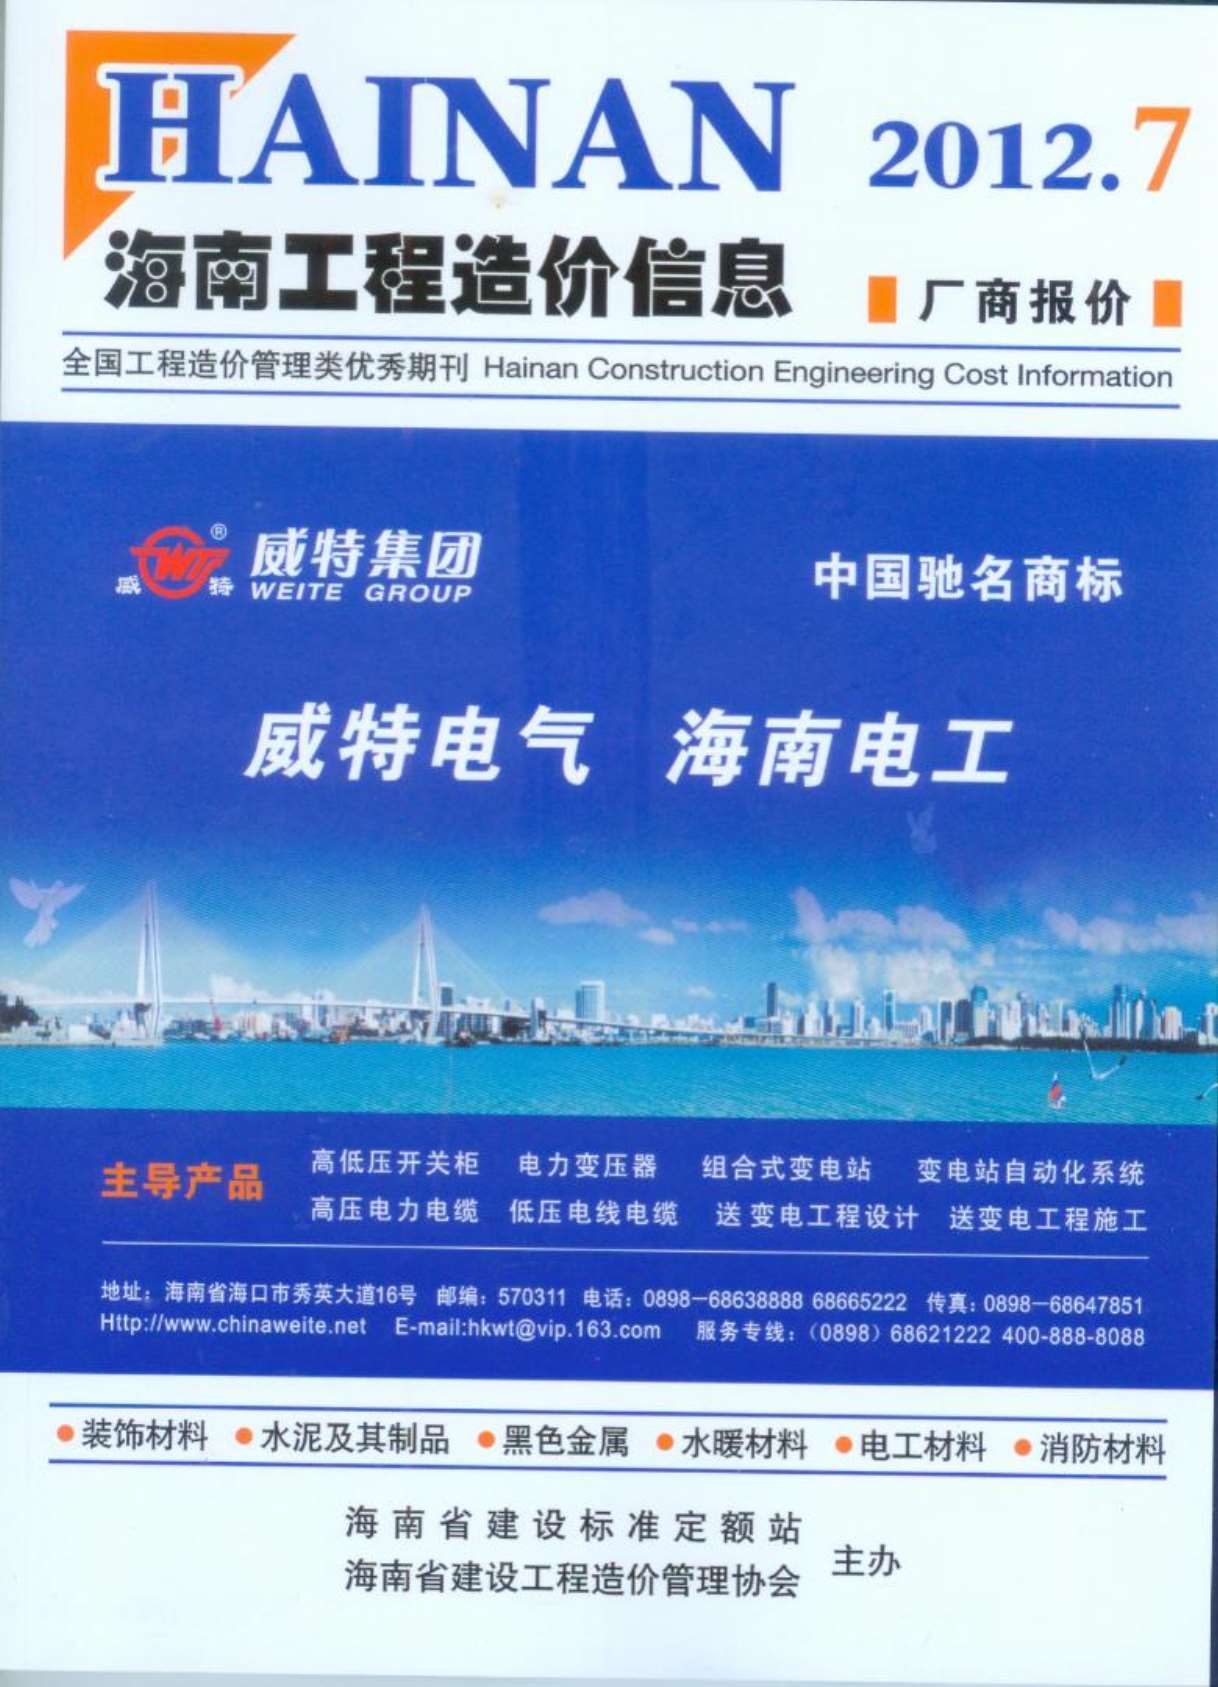 海南省2012年7月造价信息库